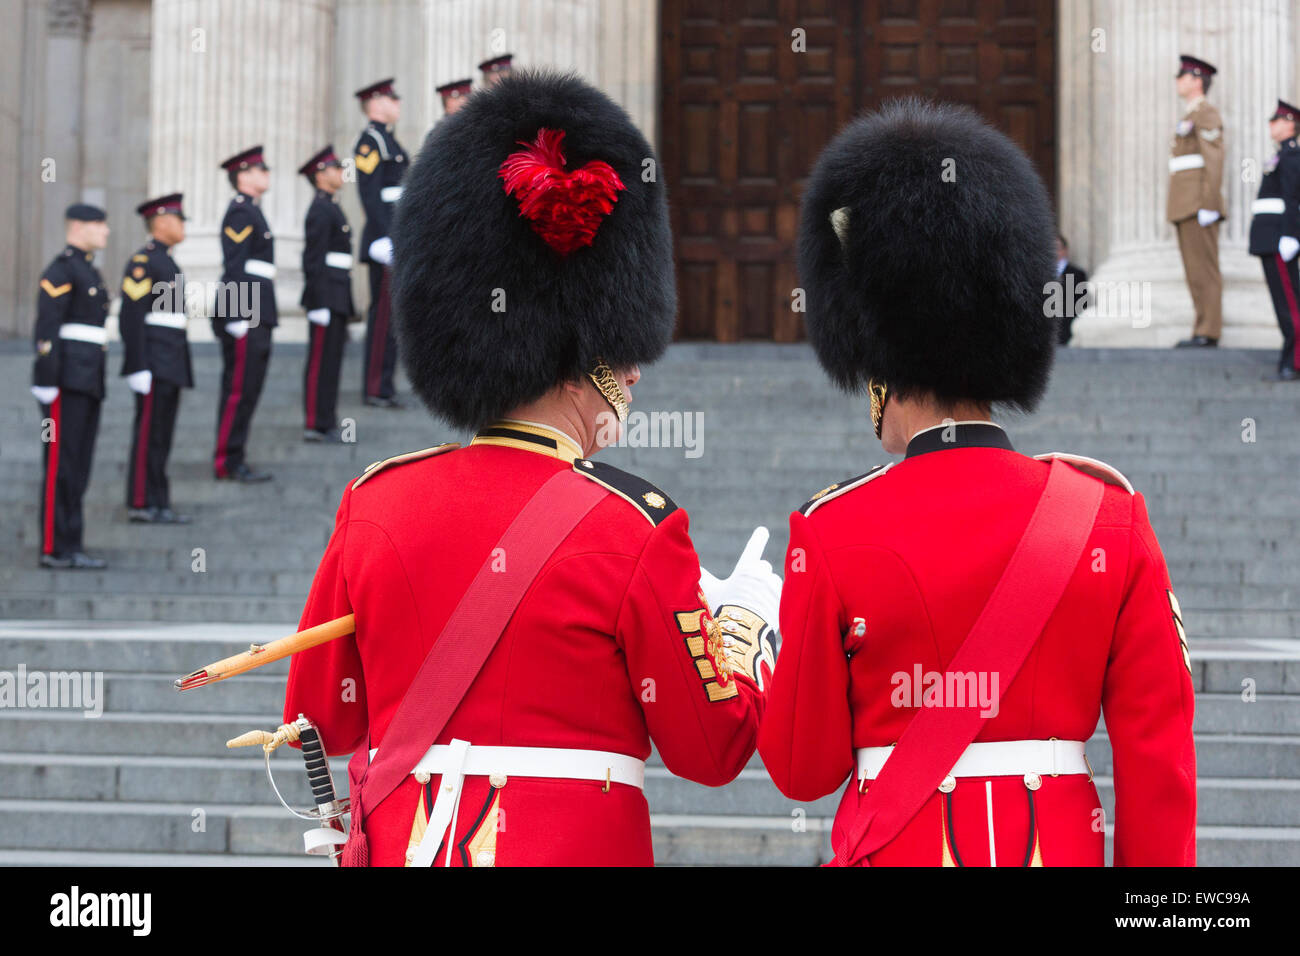 Deux gardes, Coldstream Guards et Grenadier Guards, par derrière, debout sur les marches de la Cathédrale St Paul, Londres, Angleterre, Royaume-Uni Banque D'Images